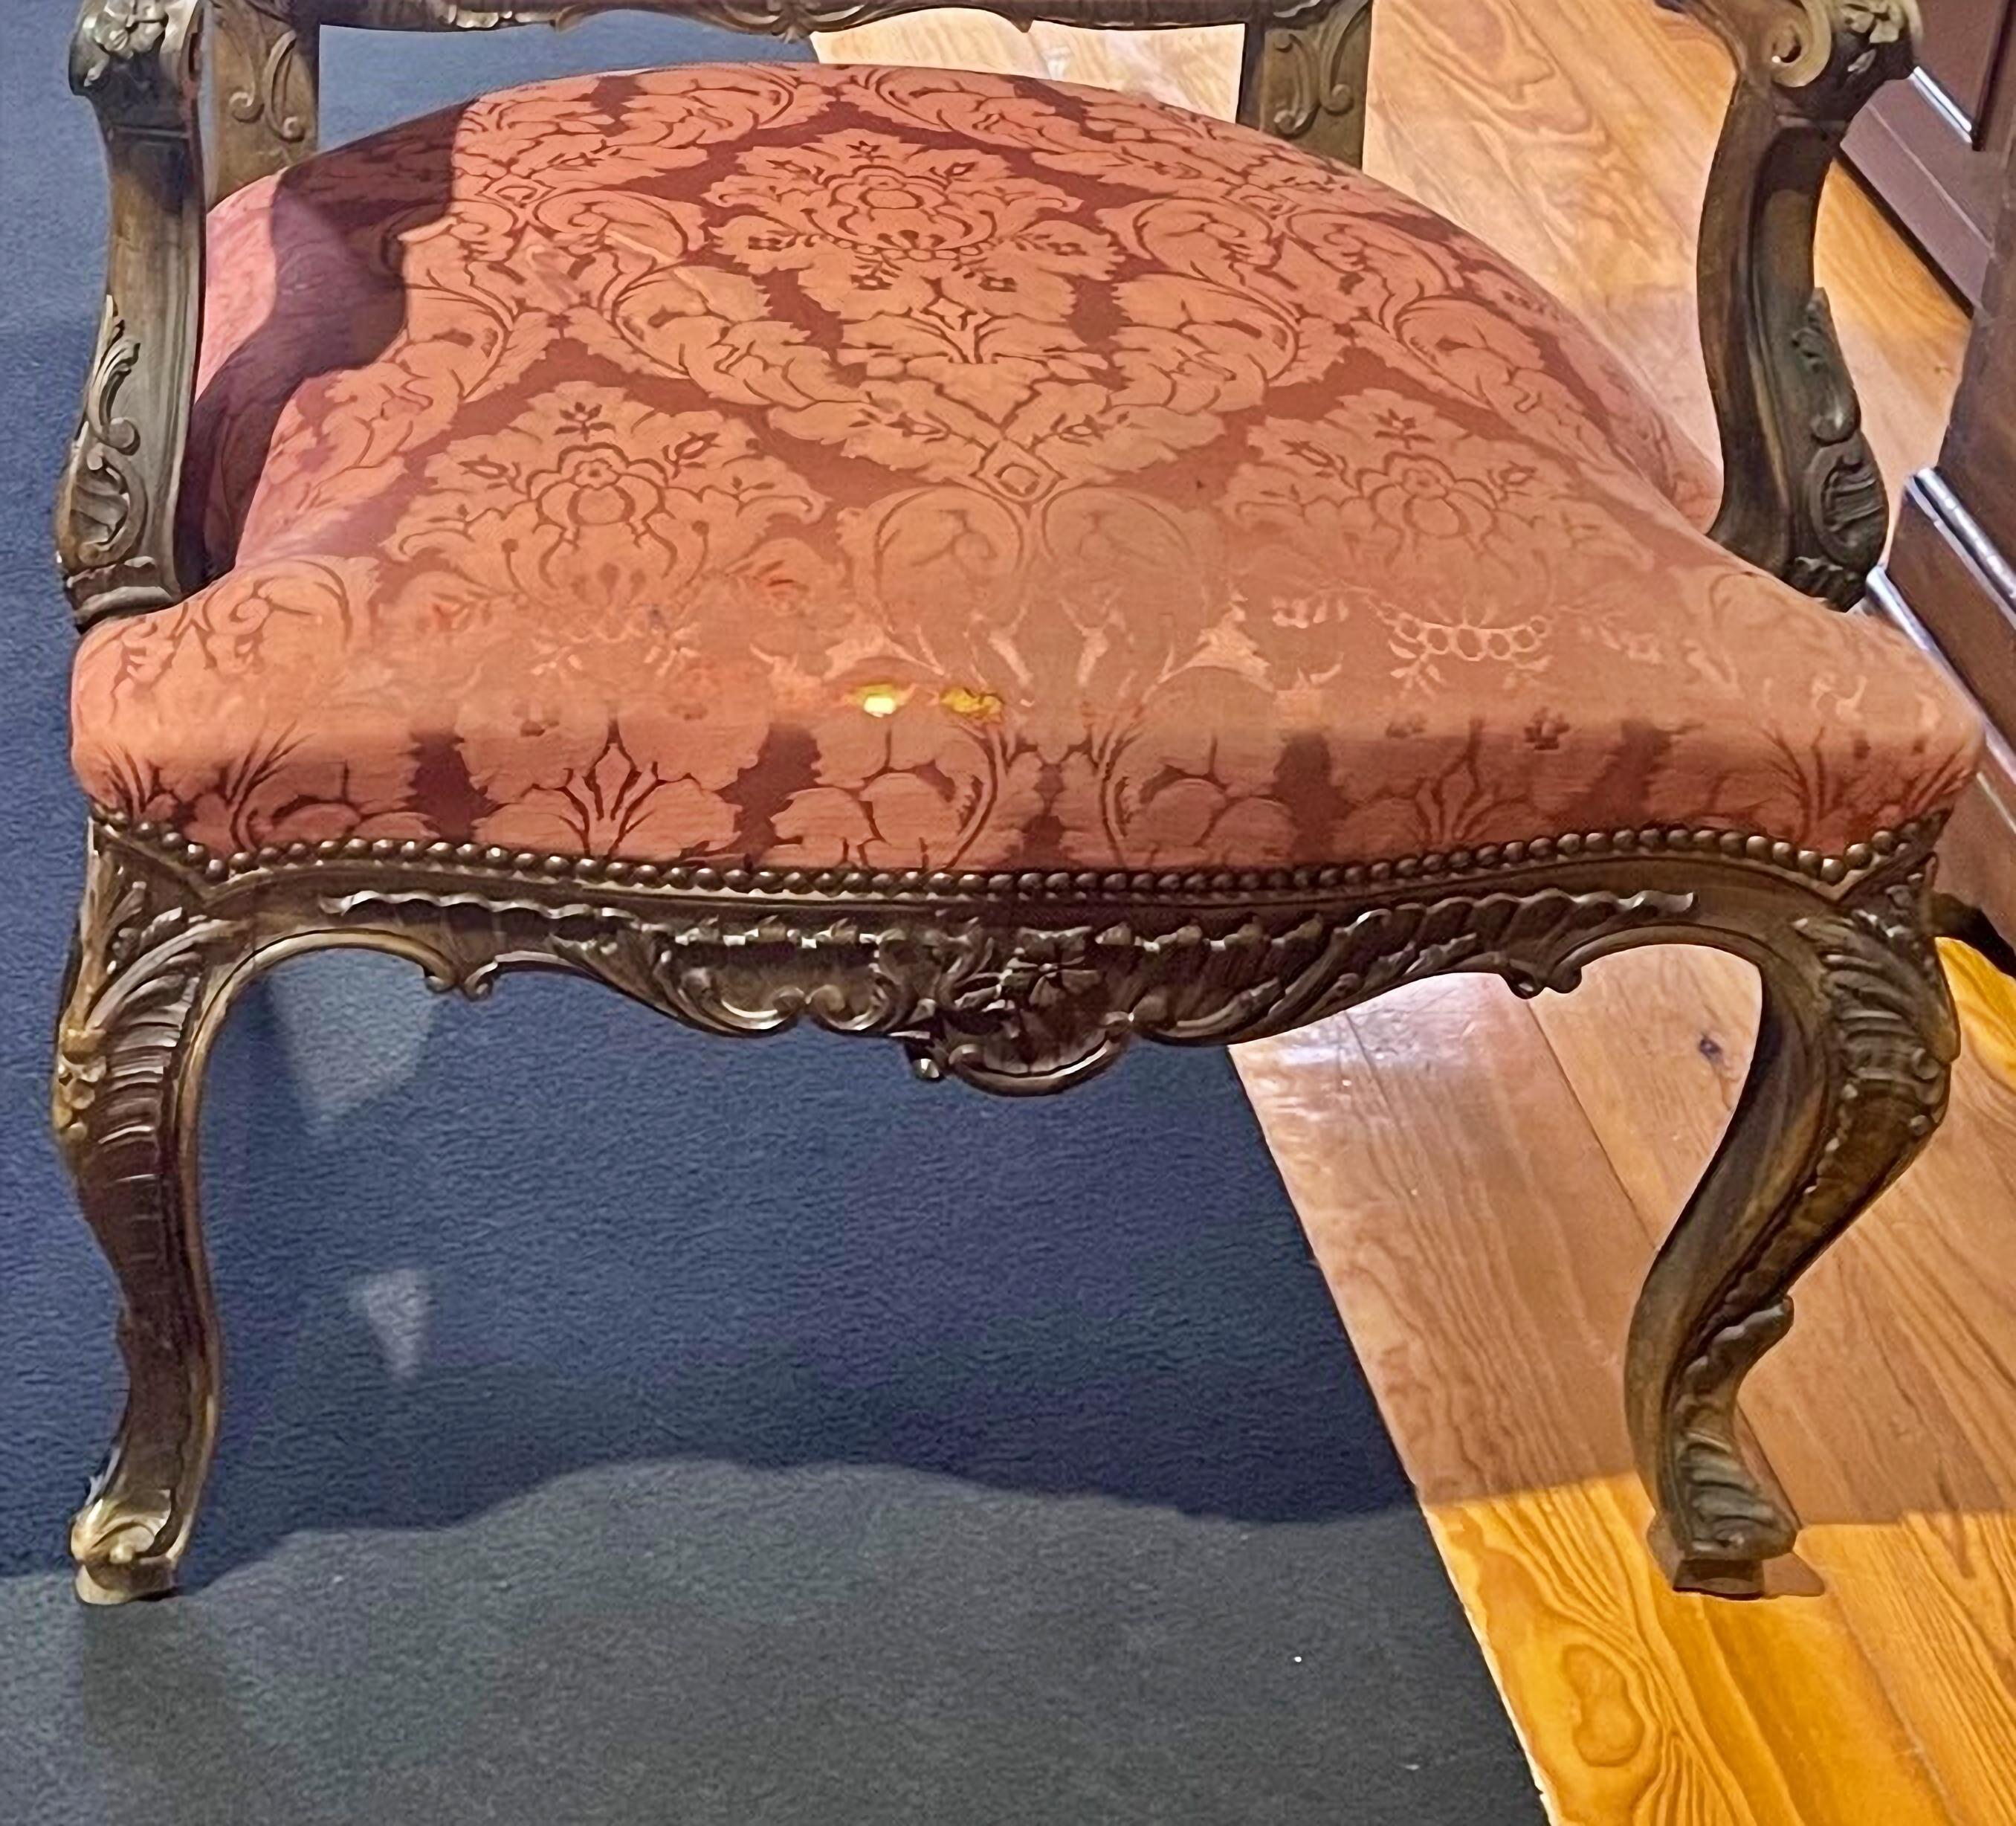 Paire de fauteuils style Louis XV 19ème siècle

Style D. Maria portugais, en bois sculpté et doré.
Rembourré en tissu dans les tons bordeaux.
Signes d'utilisation.
Dim. : 106 x 62 x 62 cm.
conditions initiales